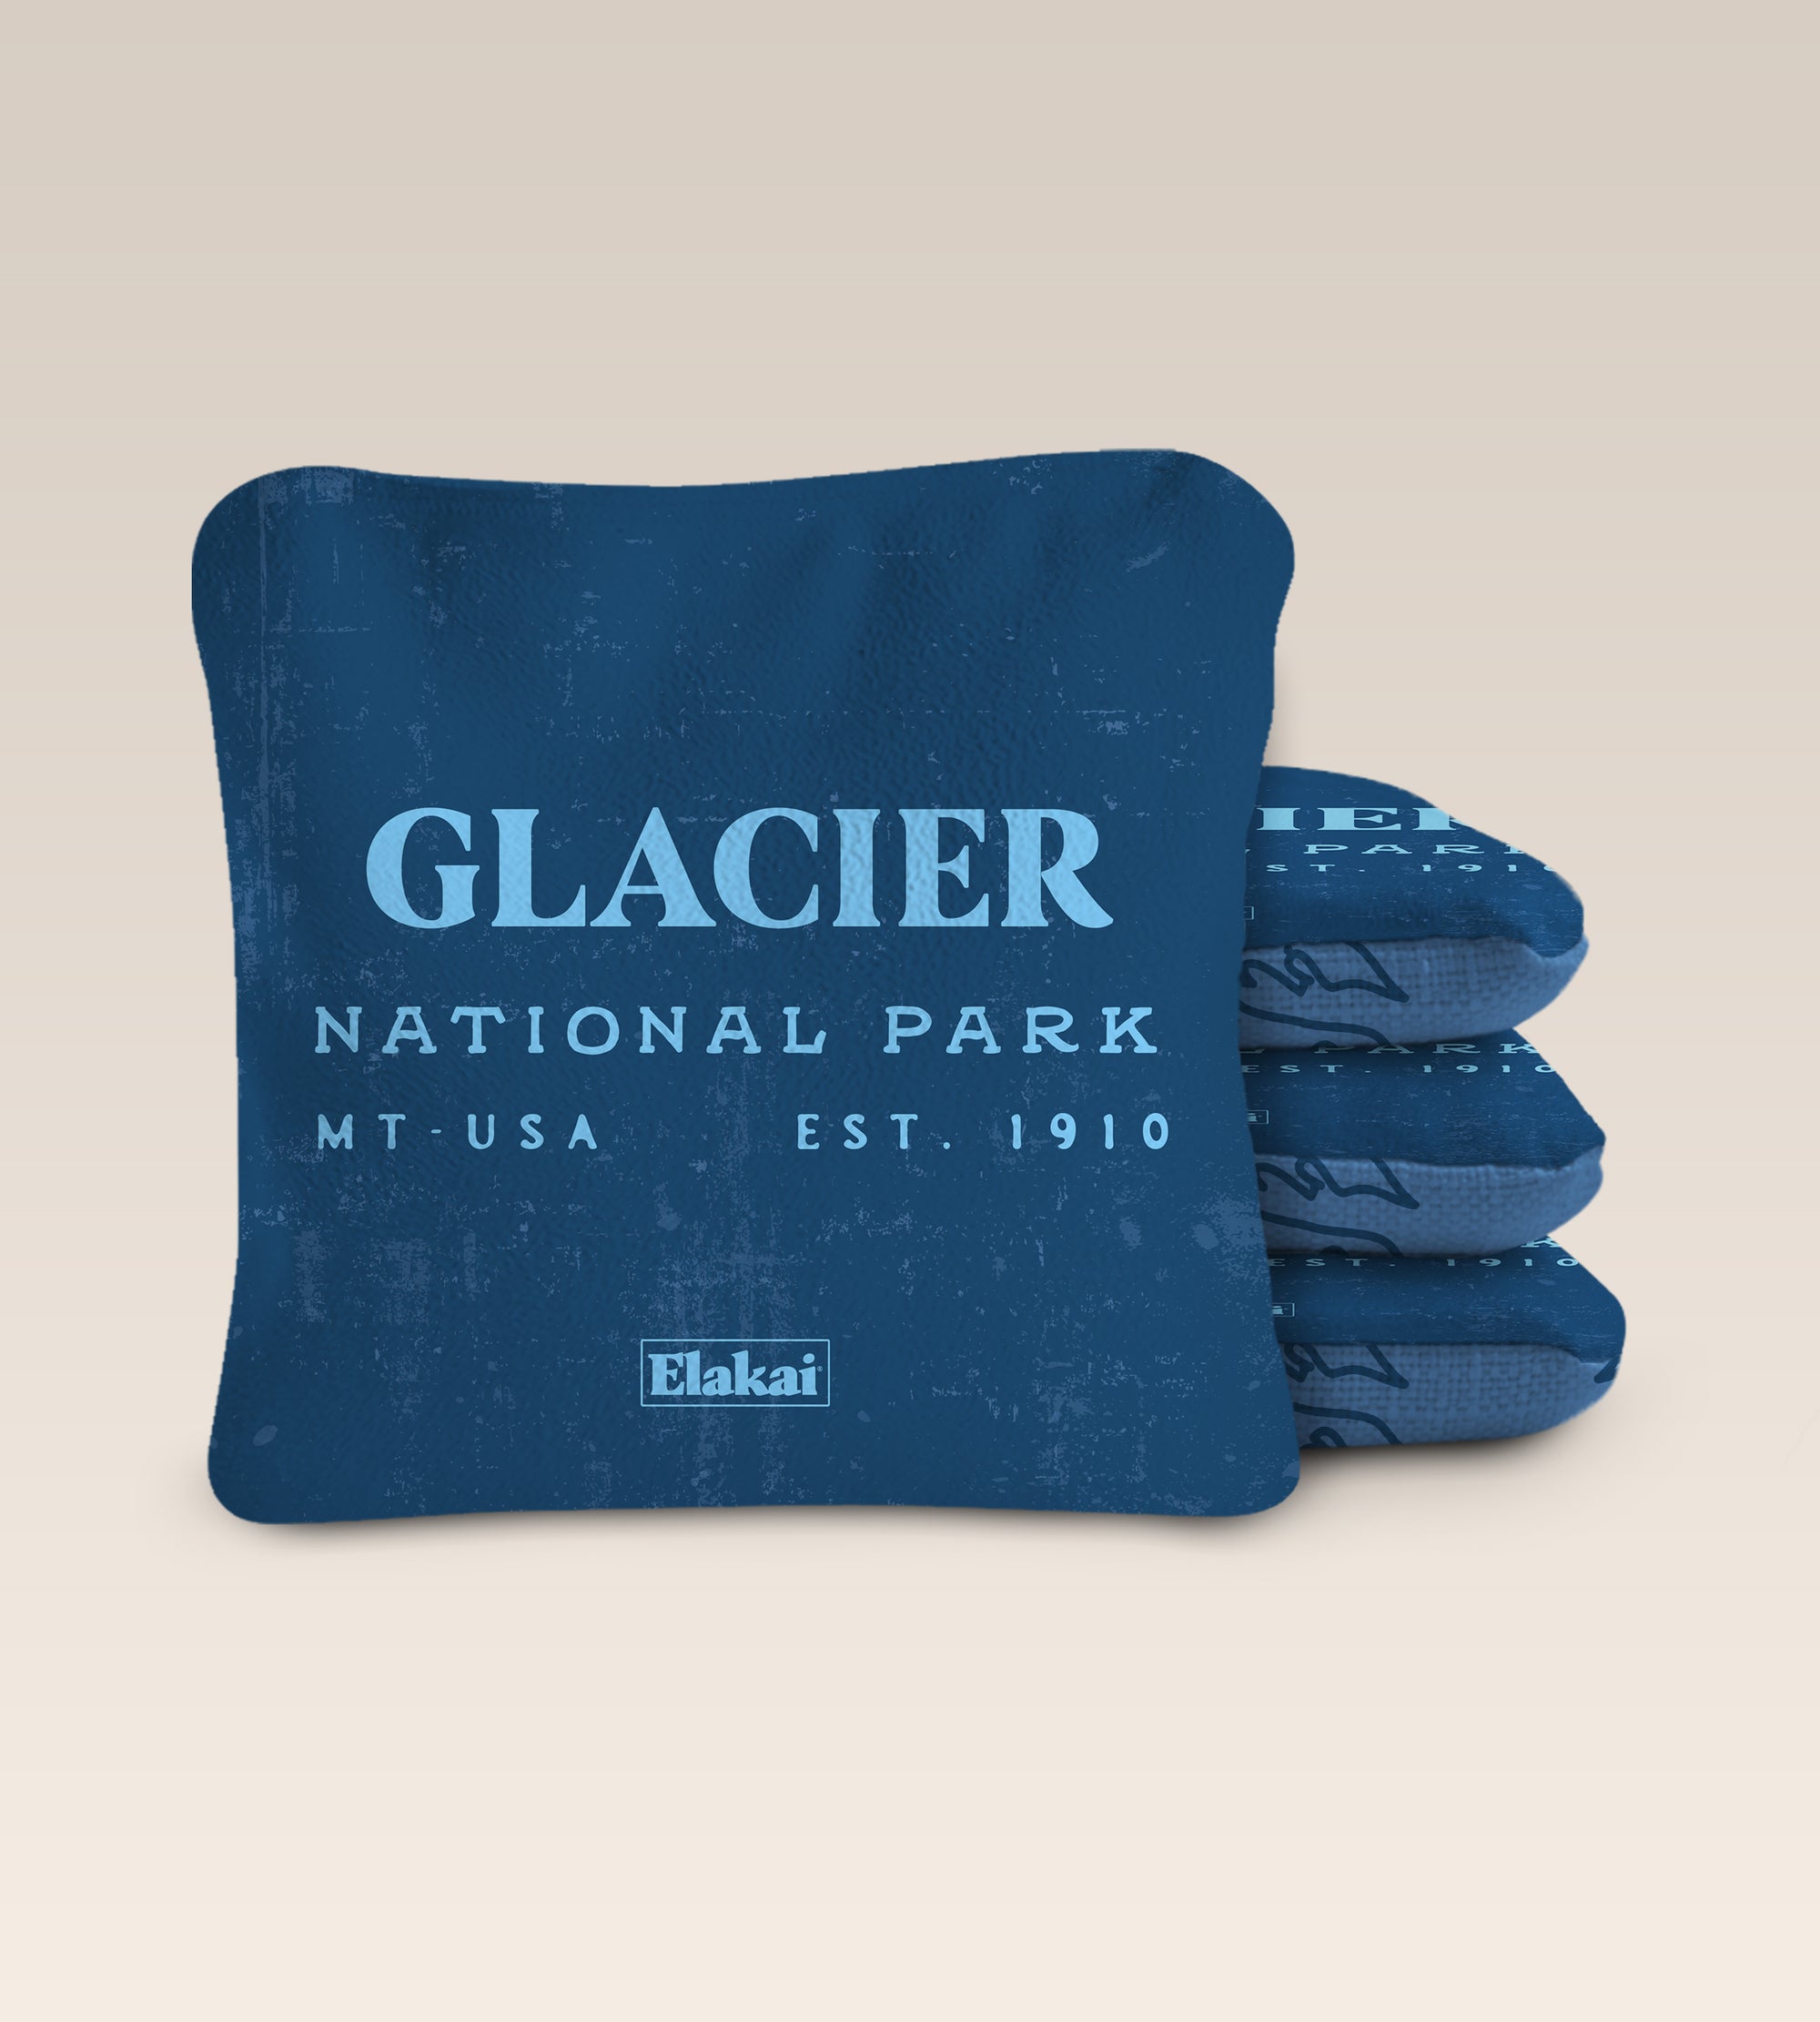 National Parks Glacier Cornhole Bags